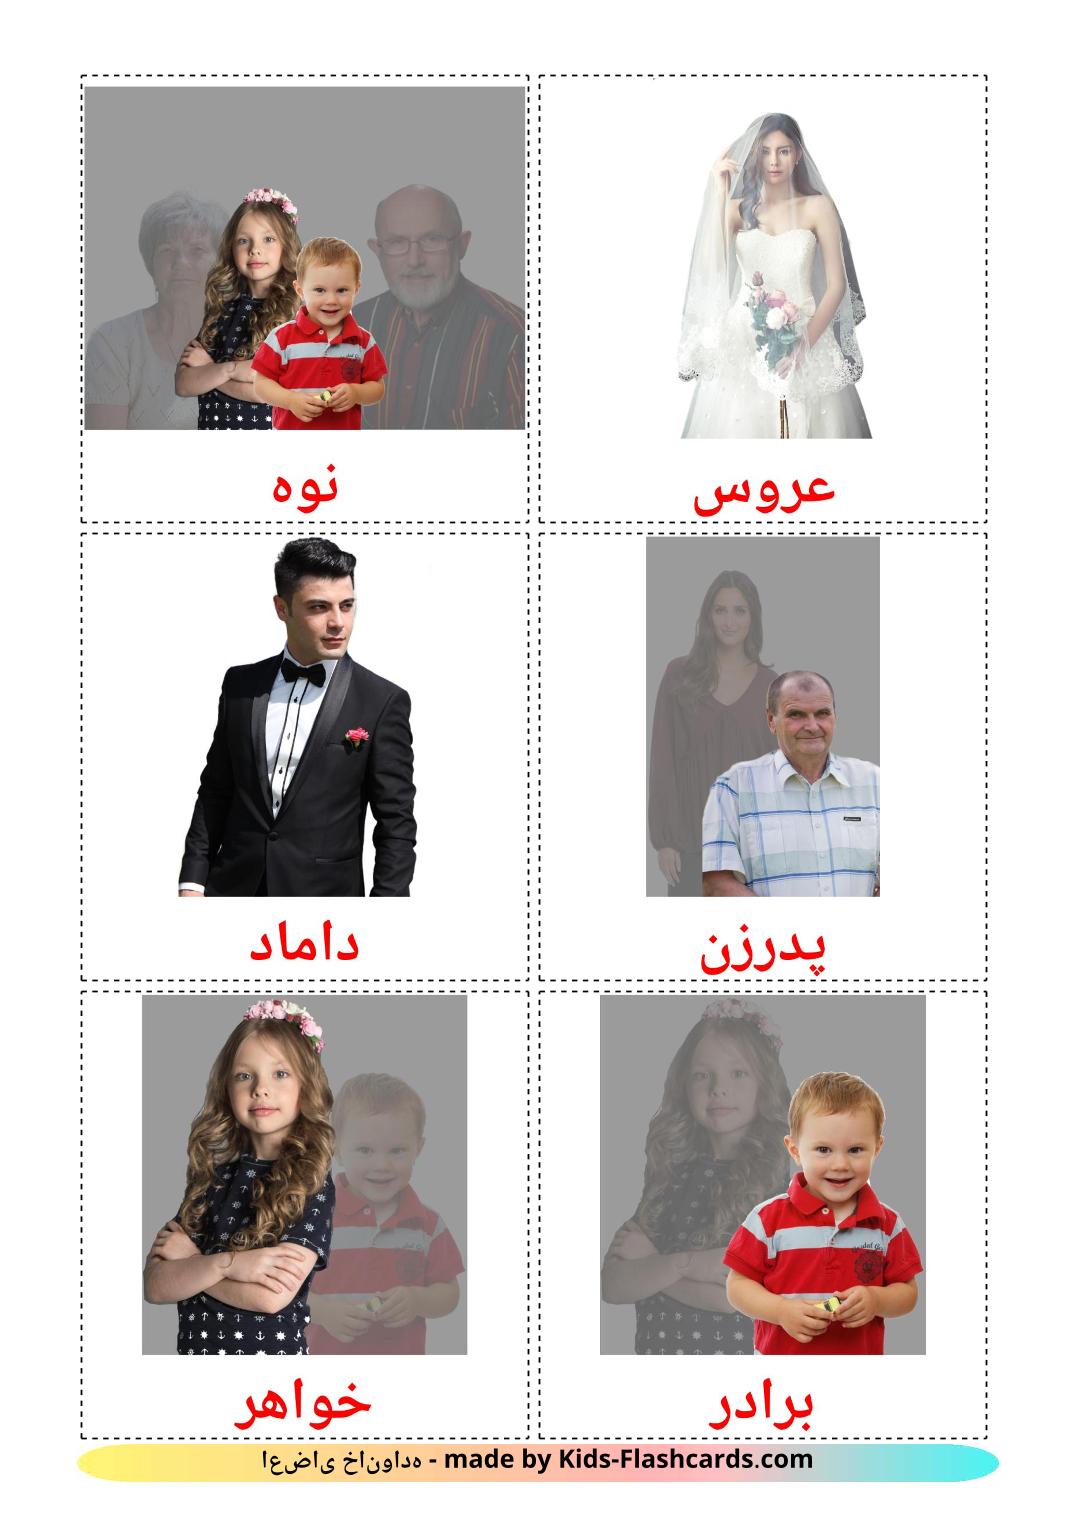 Membros da família - 32 Flashcards persaes gratuitos para impressão